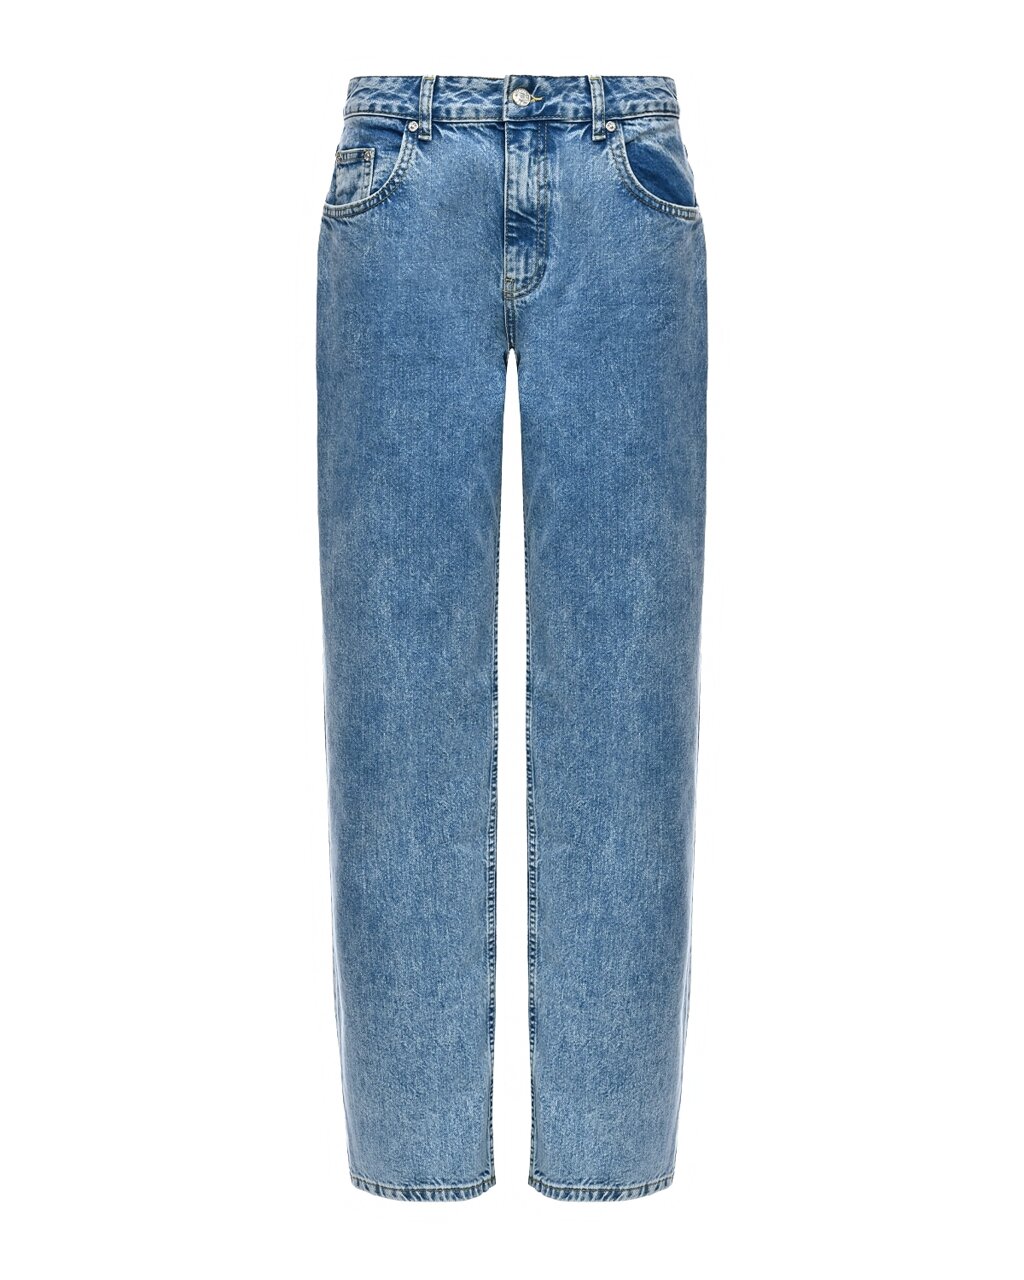 Зауженные голубые джинсы Mo5ch1no Jeans от компании Admi - фото 1